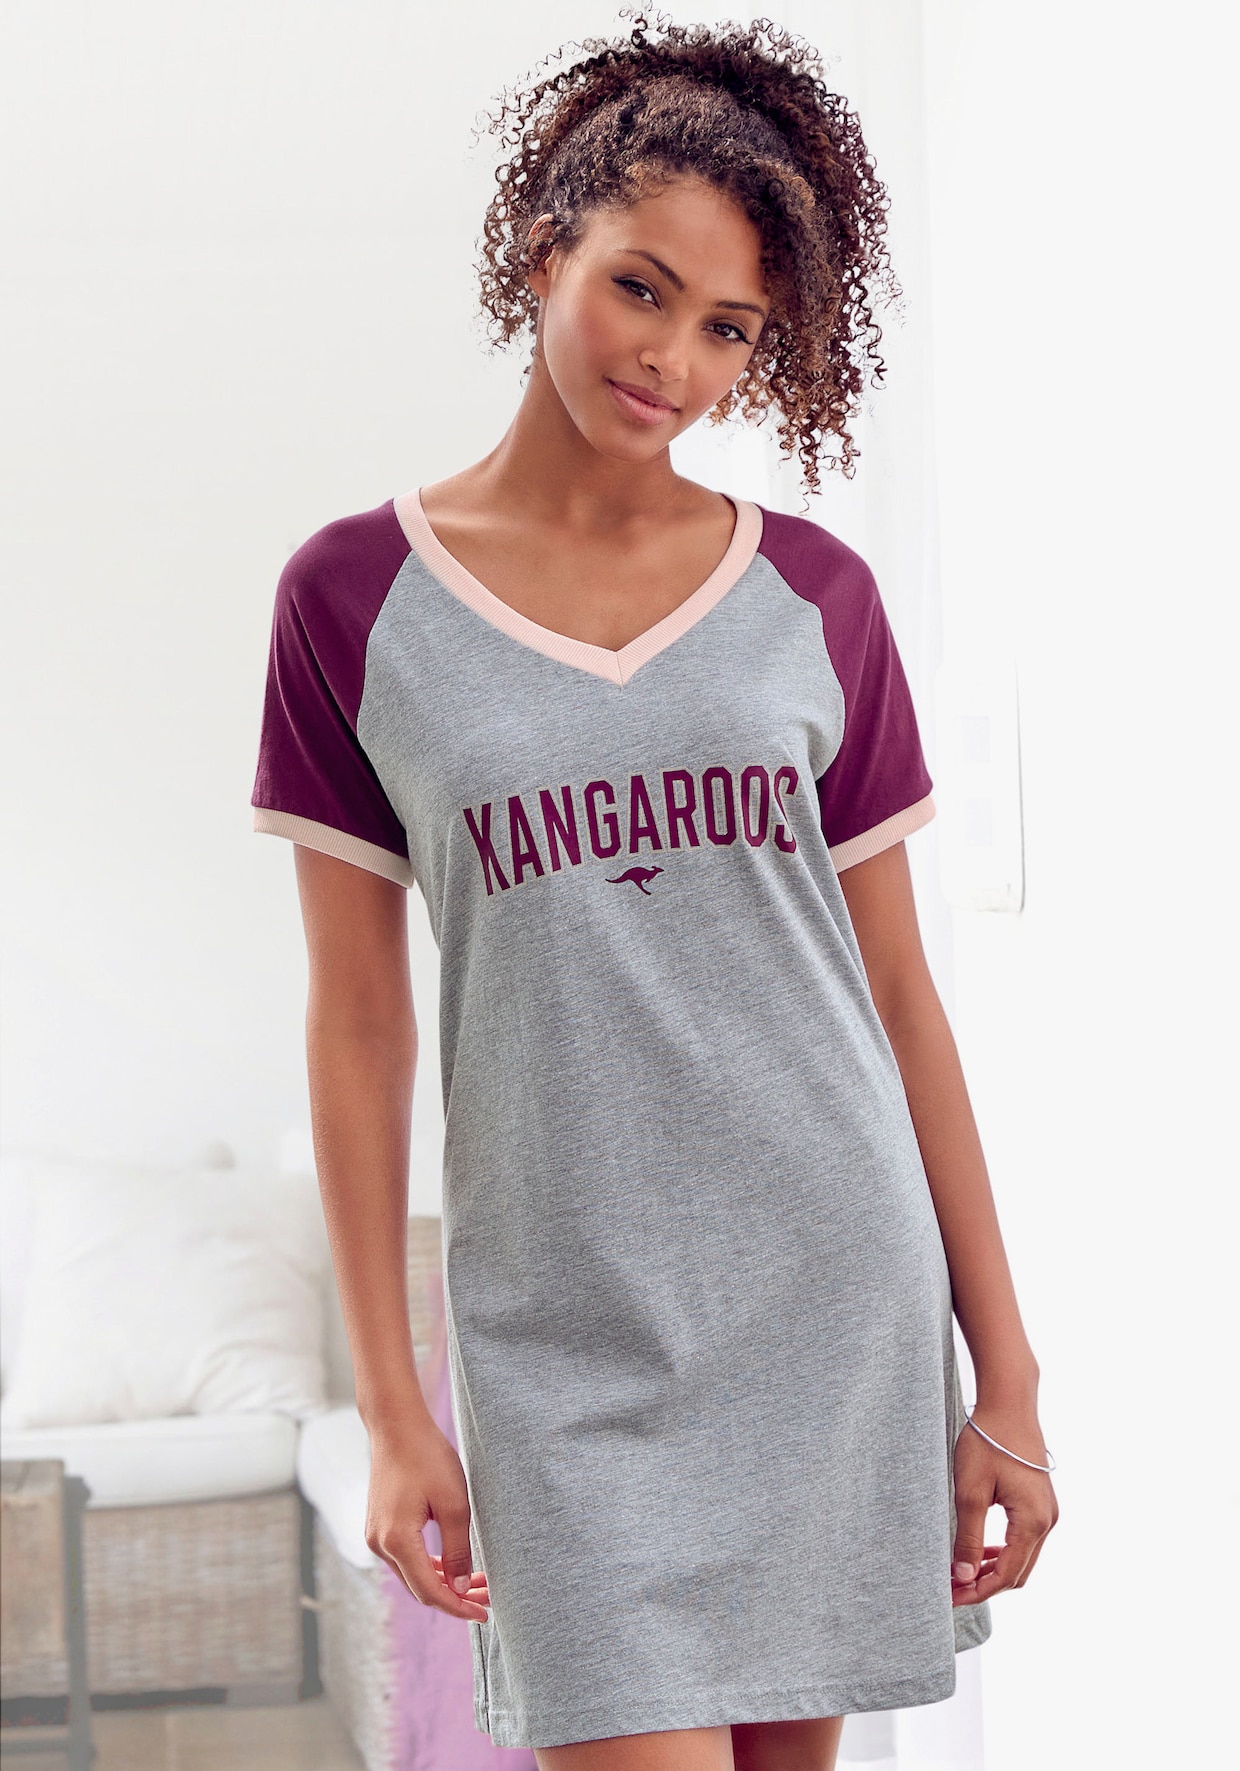 KangaROOS Bigshirt - bordeaux-grau-meliert